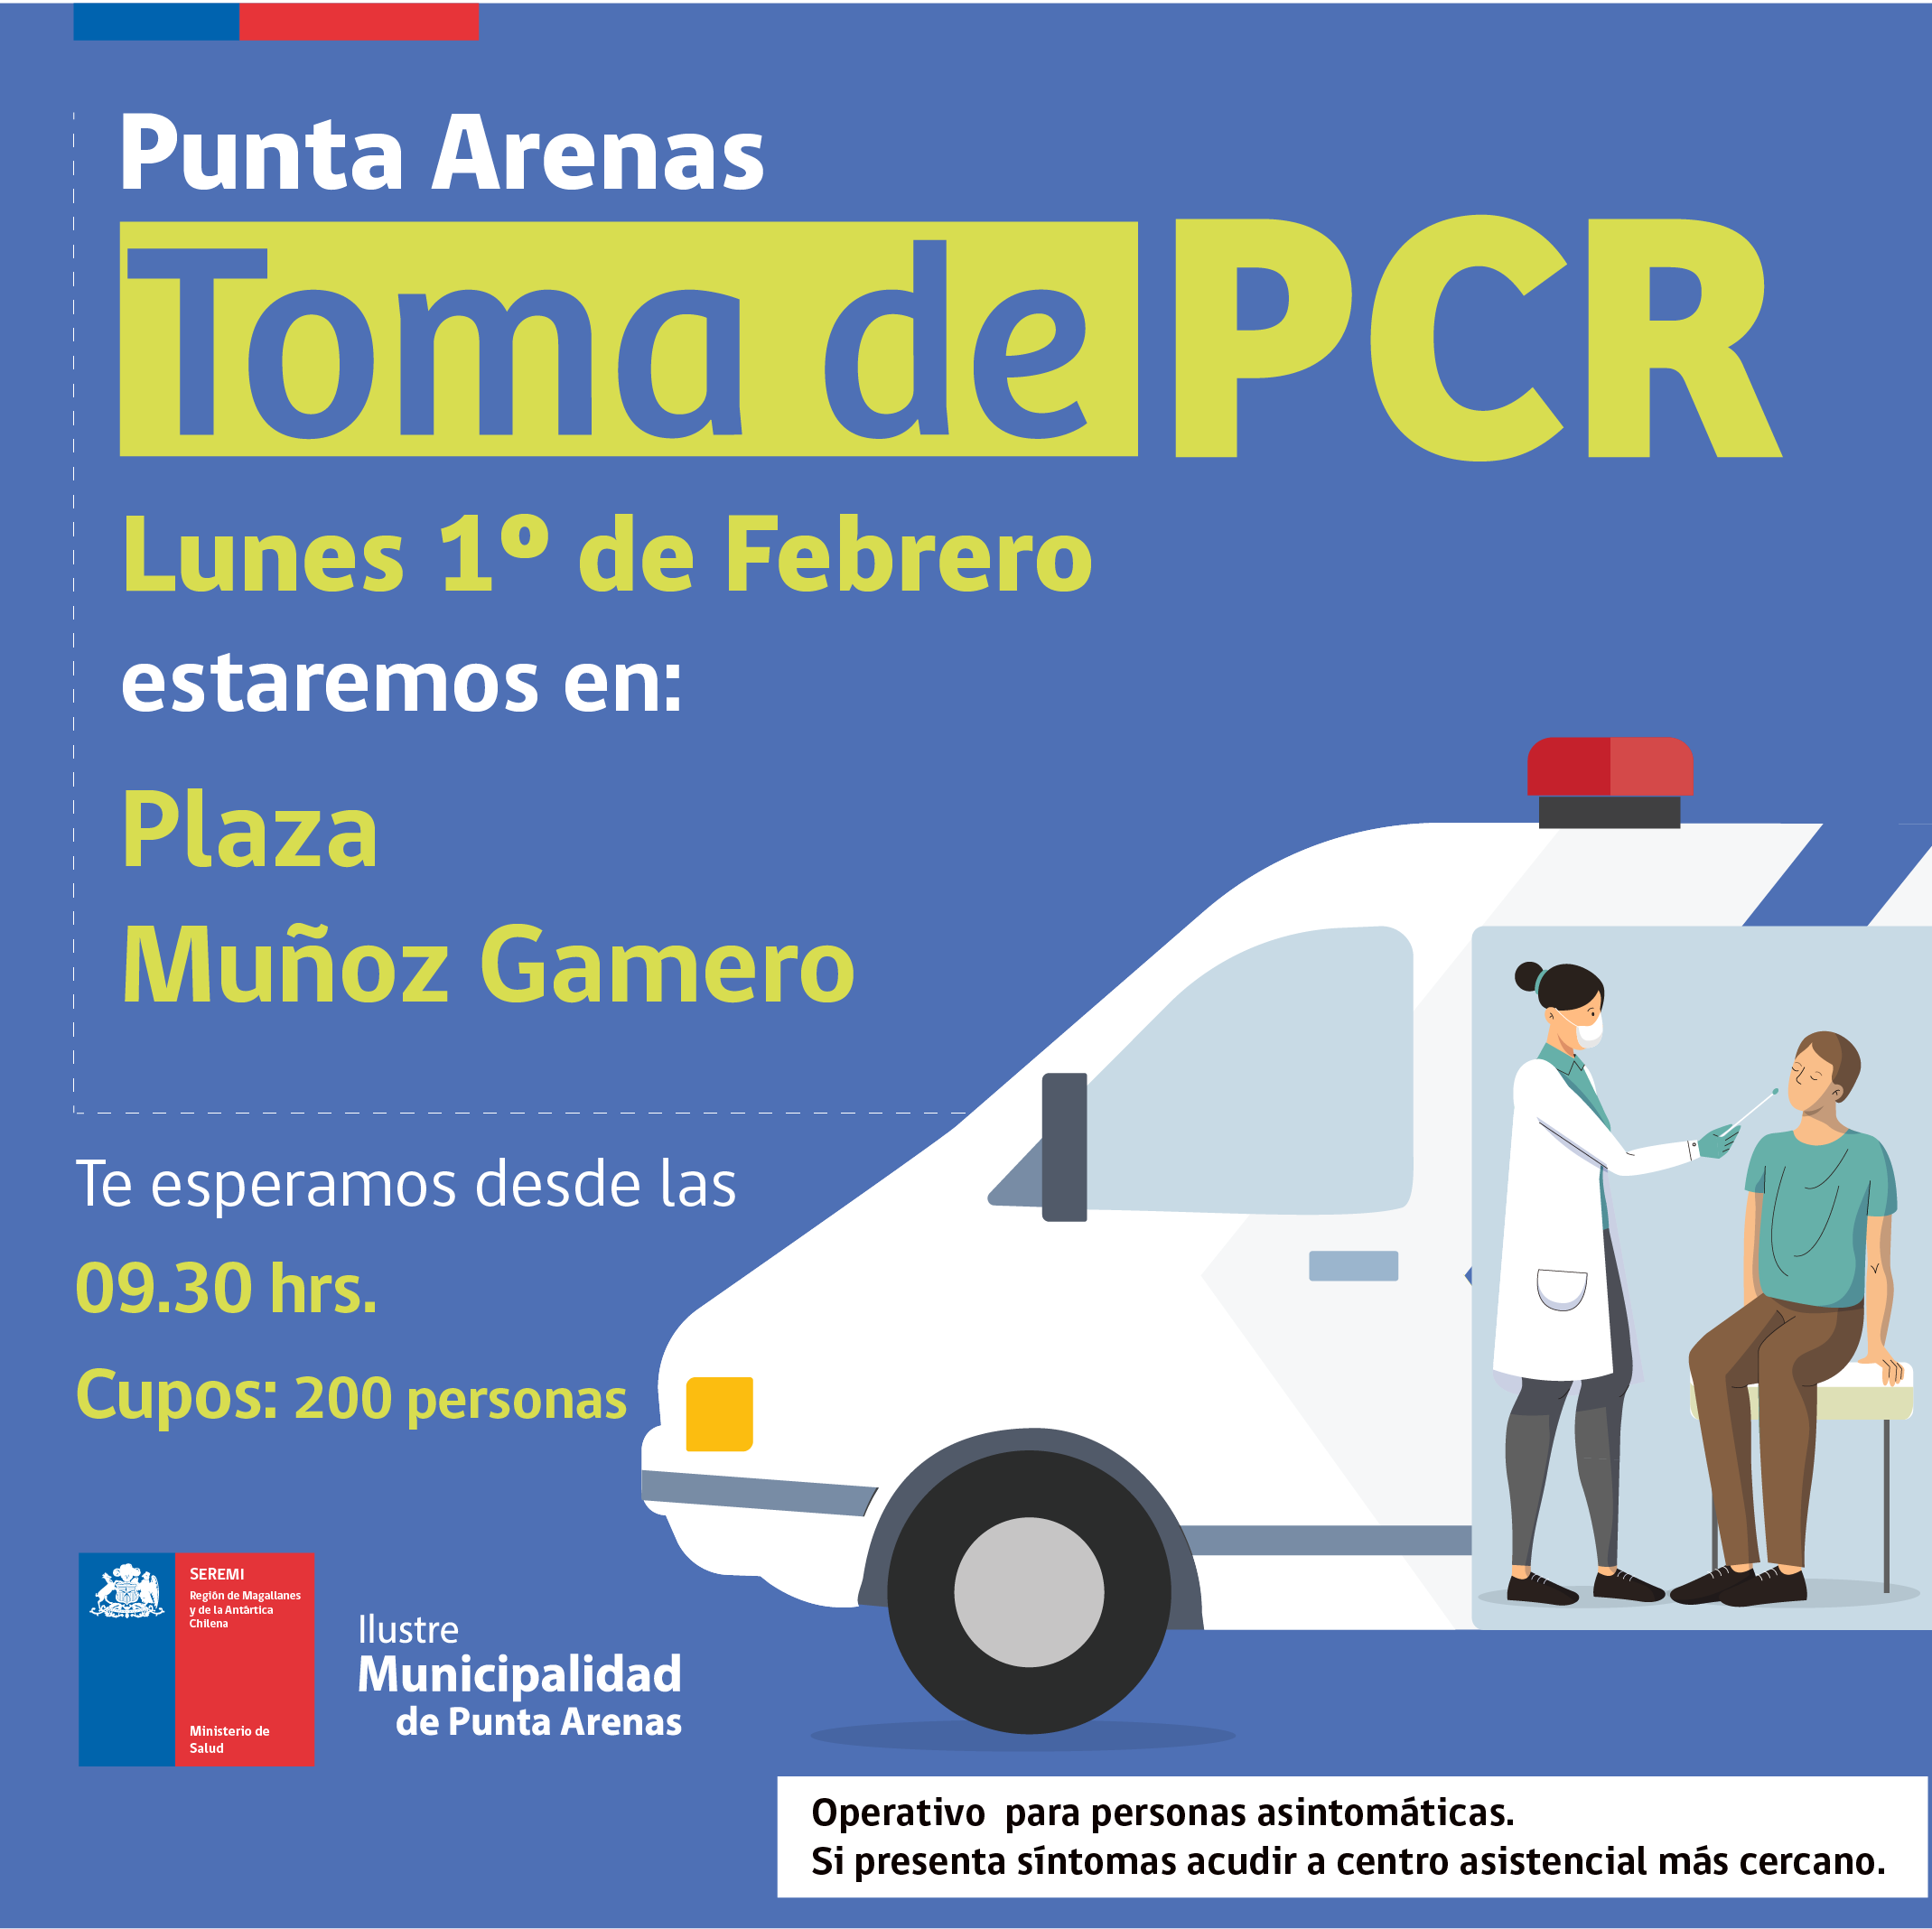 Hoy se efectúa toma de PCR en Punta Arenas, Porvenir, Puerto Williams y Puerto Natales